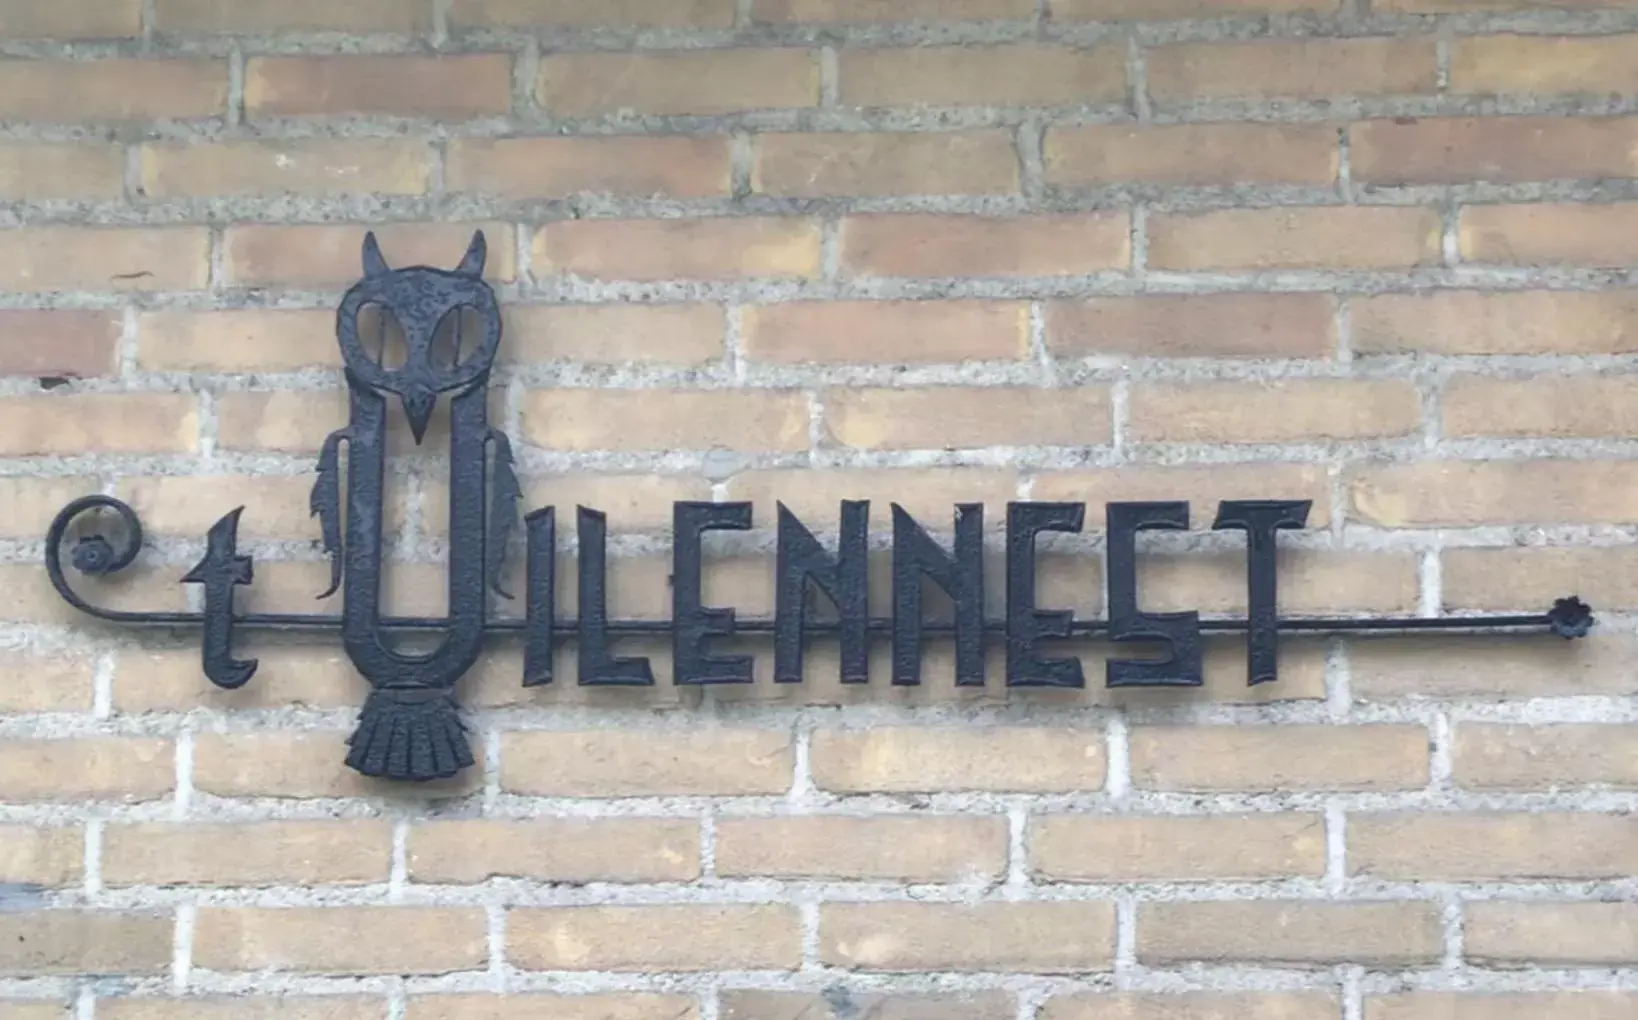 Property logo or sign in Het Uilennest